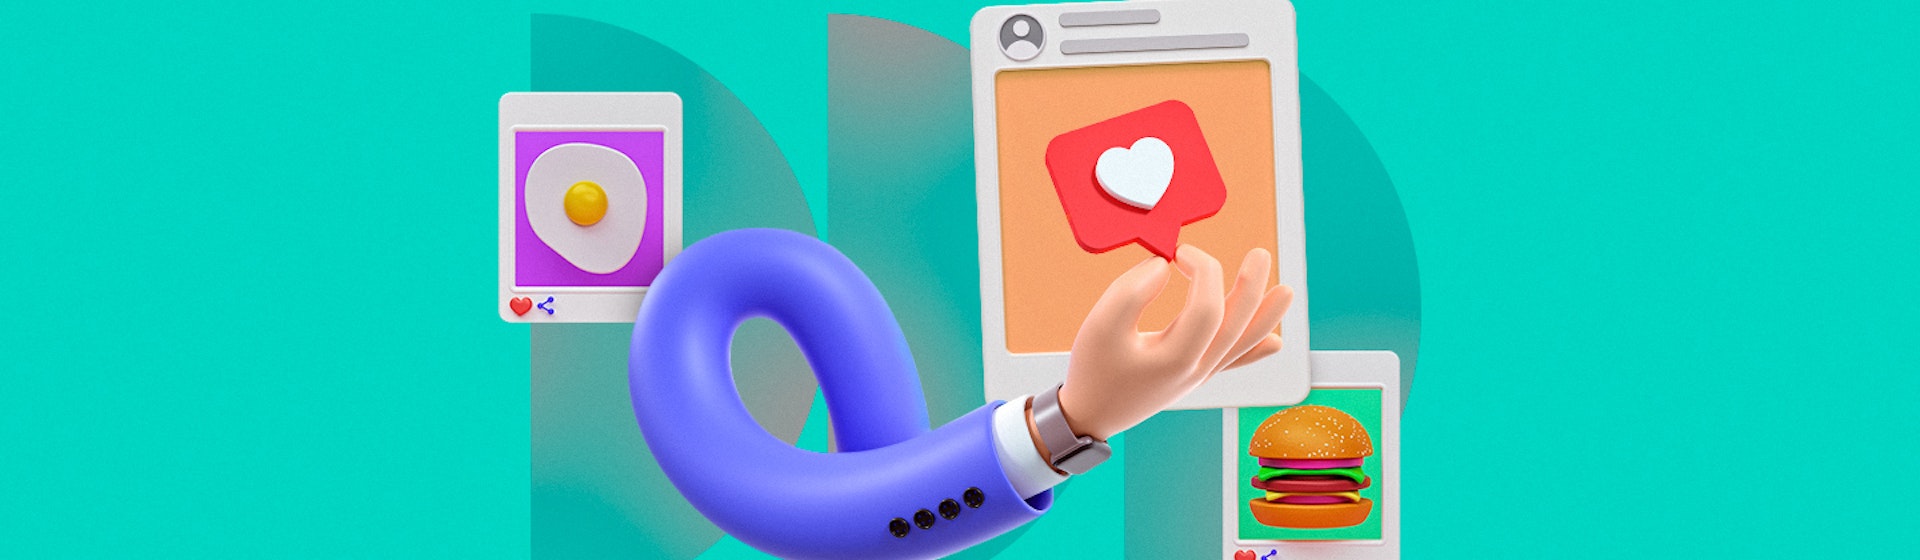 10 tipos de contenido para redes sociales para hacer “match” con tus leads